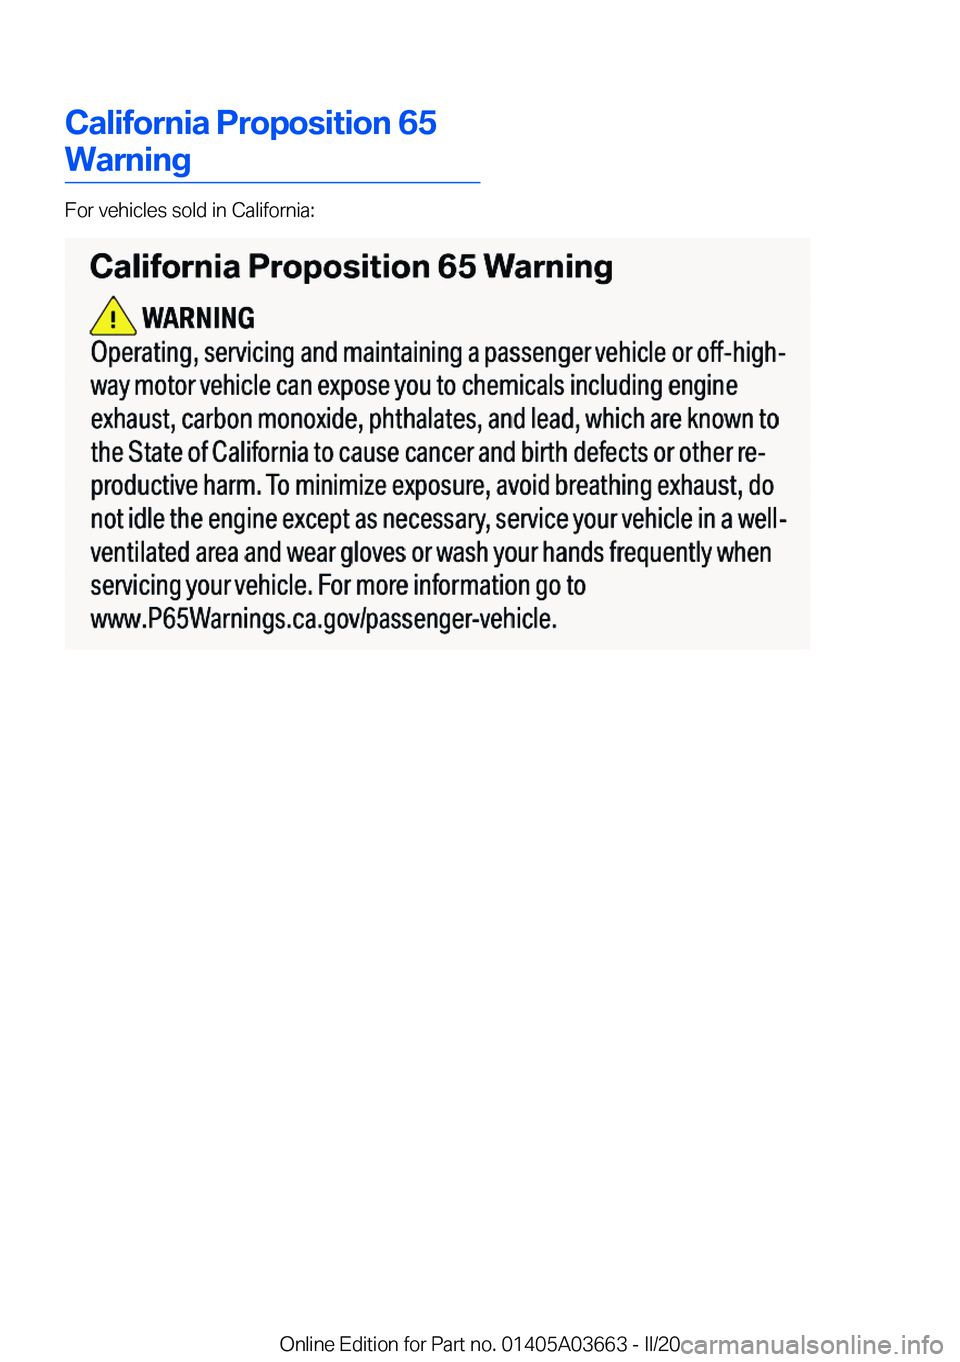 BMW X5 PLUG-IN HYBRID 2021  Owners Manual �C�a�l�i�f�o�r�n�i�a��P�r�o�p�o�s�i�t�i�o�n��6�5
�W�a�r�n�i�n�g
�F�o�r��v�e�h�i�c�l�e�s��s�o�l�d��i�n��C�a�l�i�f�o�r�n�i�a�:
�O�n�l�i�n�e��E�d�i�t�i�o�n��f�o�r��P�a�r�t��n�o�.��0�1�4�0�5�A�